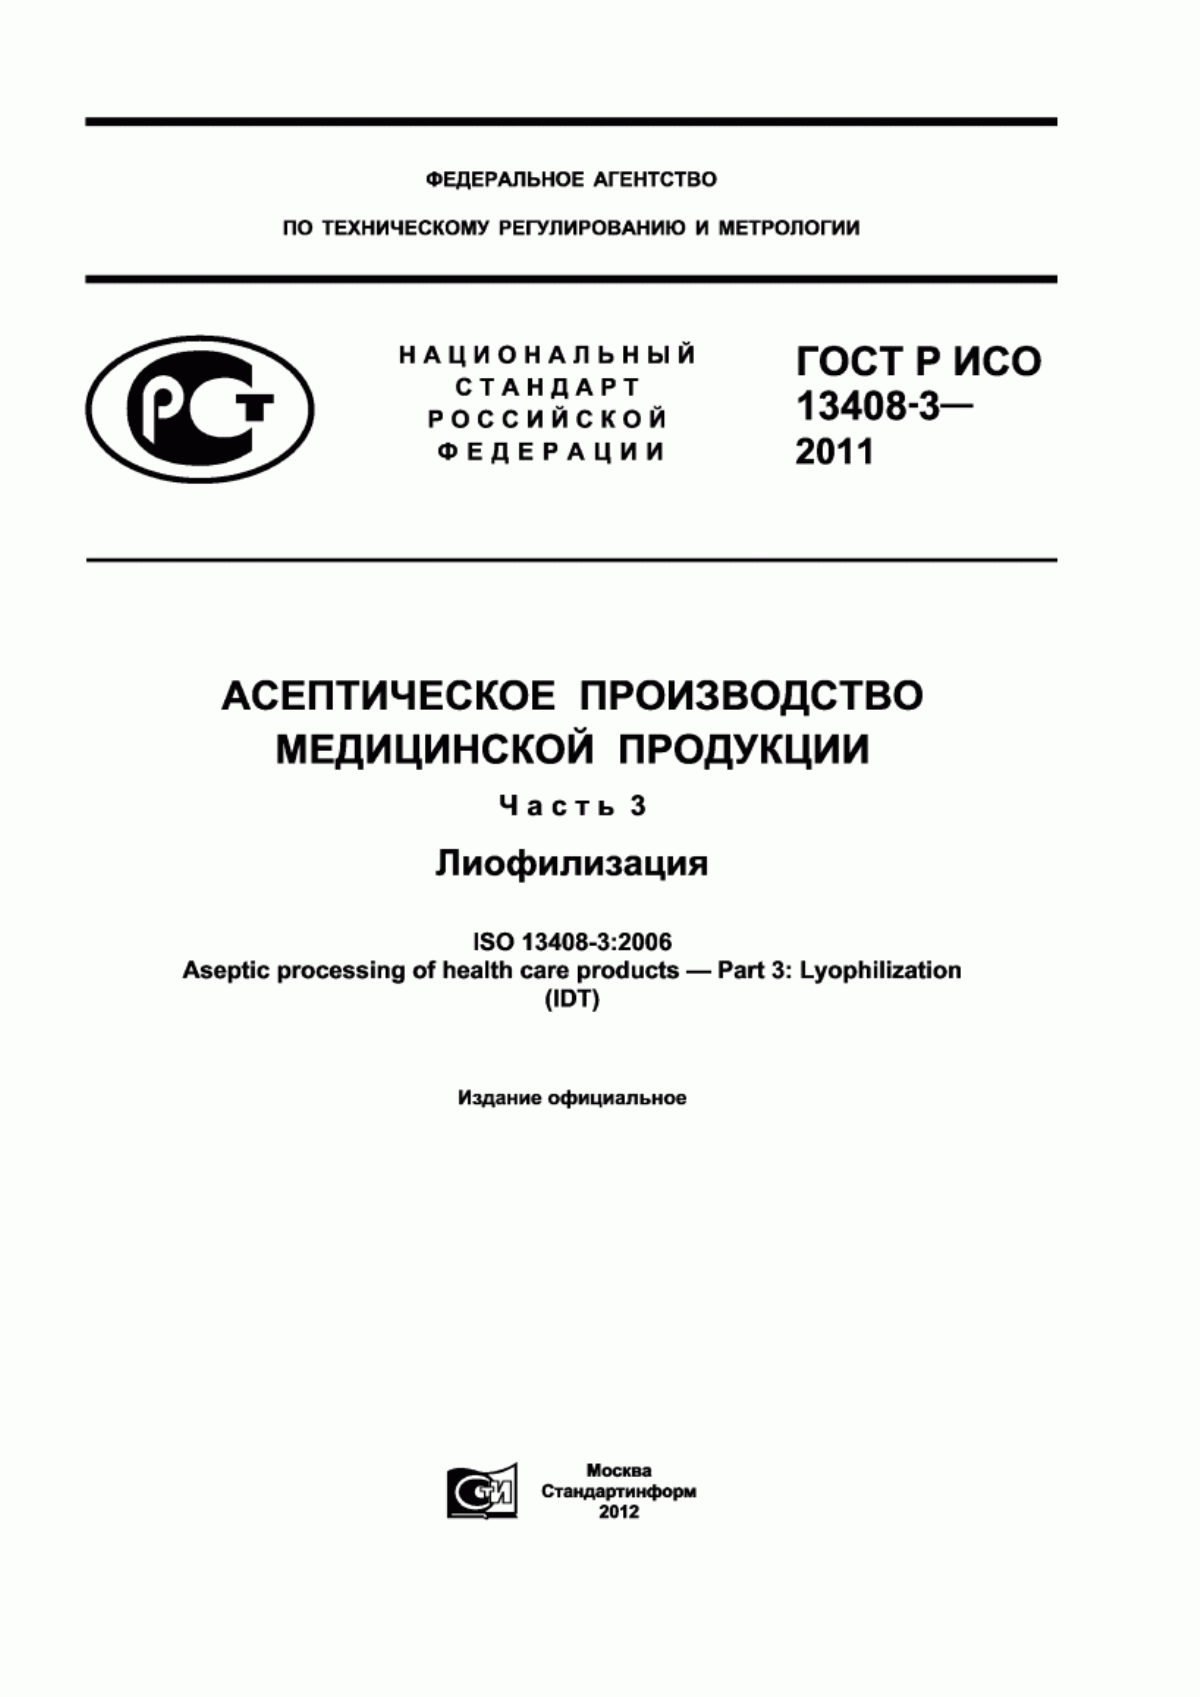 ГОСТ Р ИСО 13408-3-2011 Асептическое производство медицинской продукции. Часть 3. Лиофилизация